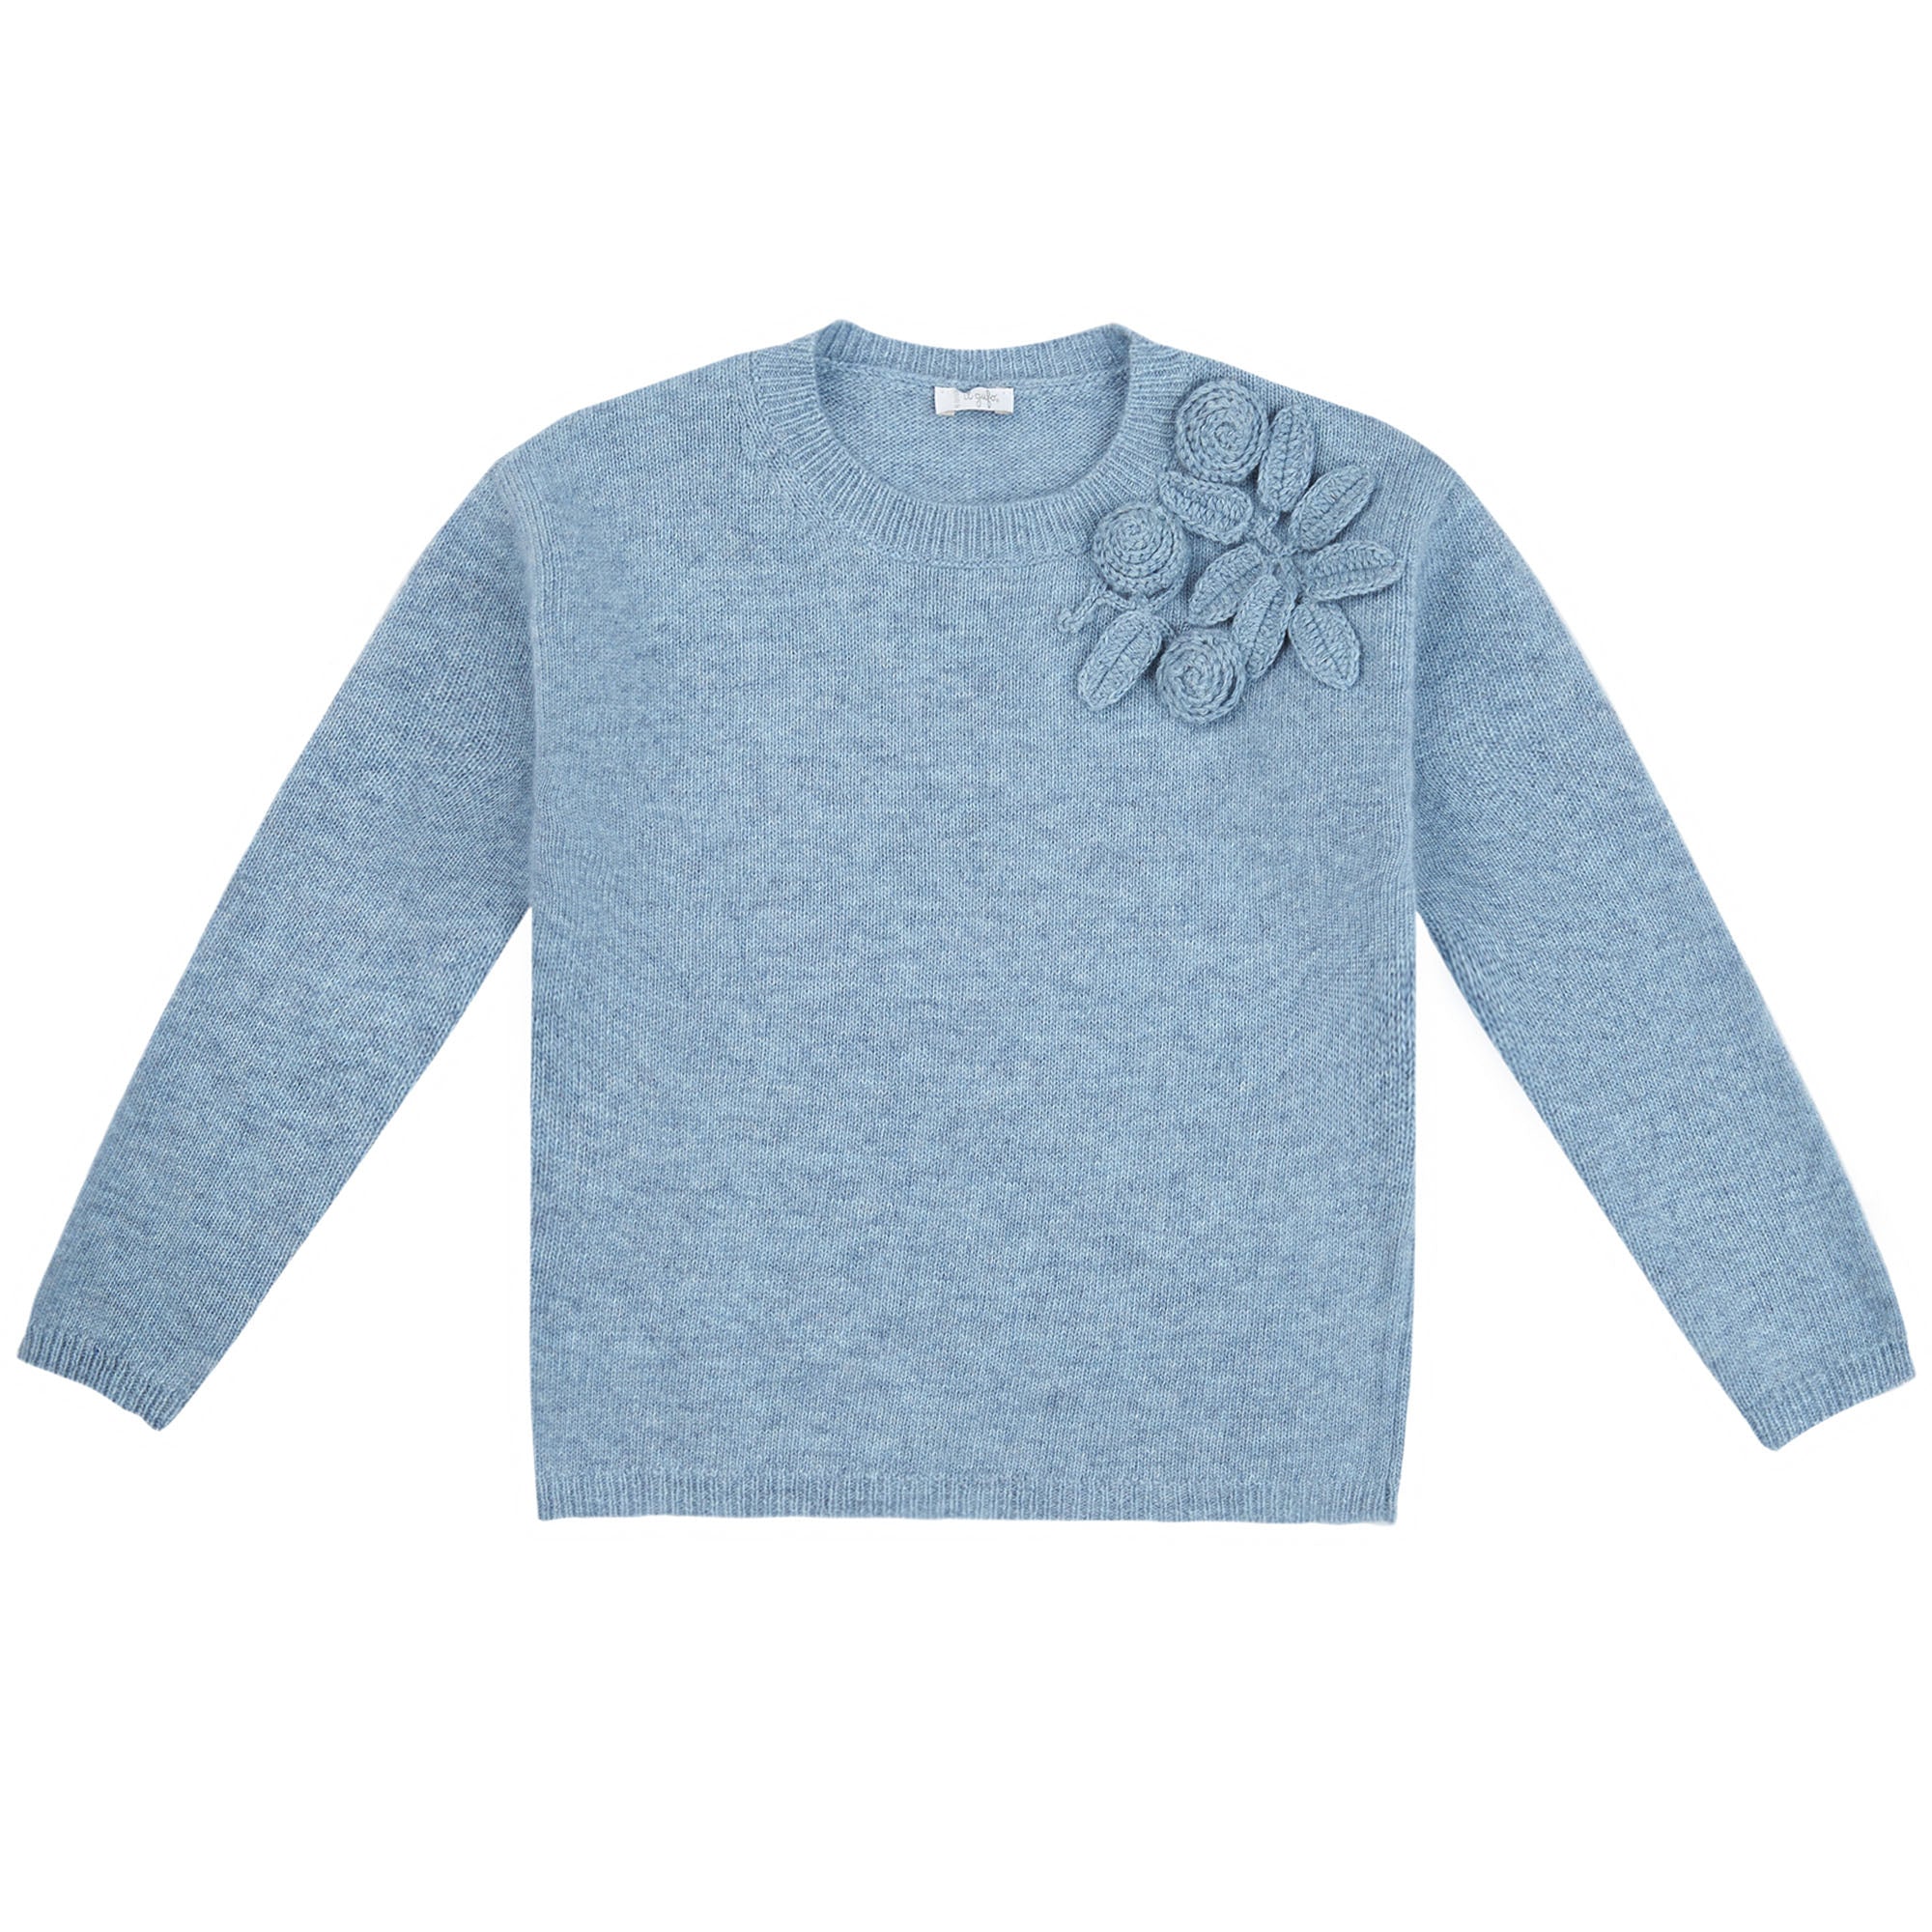 Girls Light Blue Wool Sweater